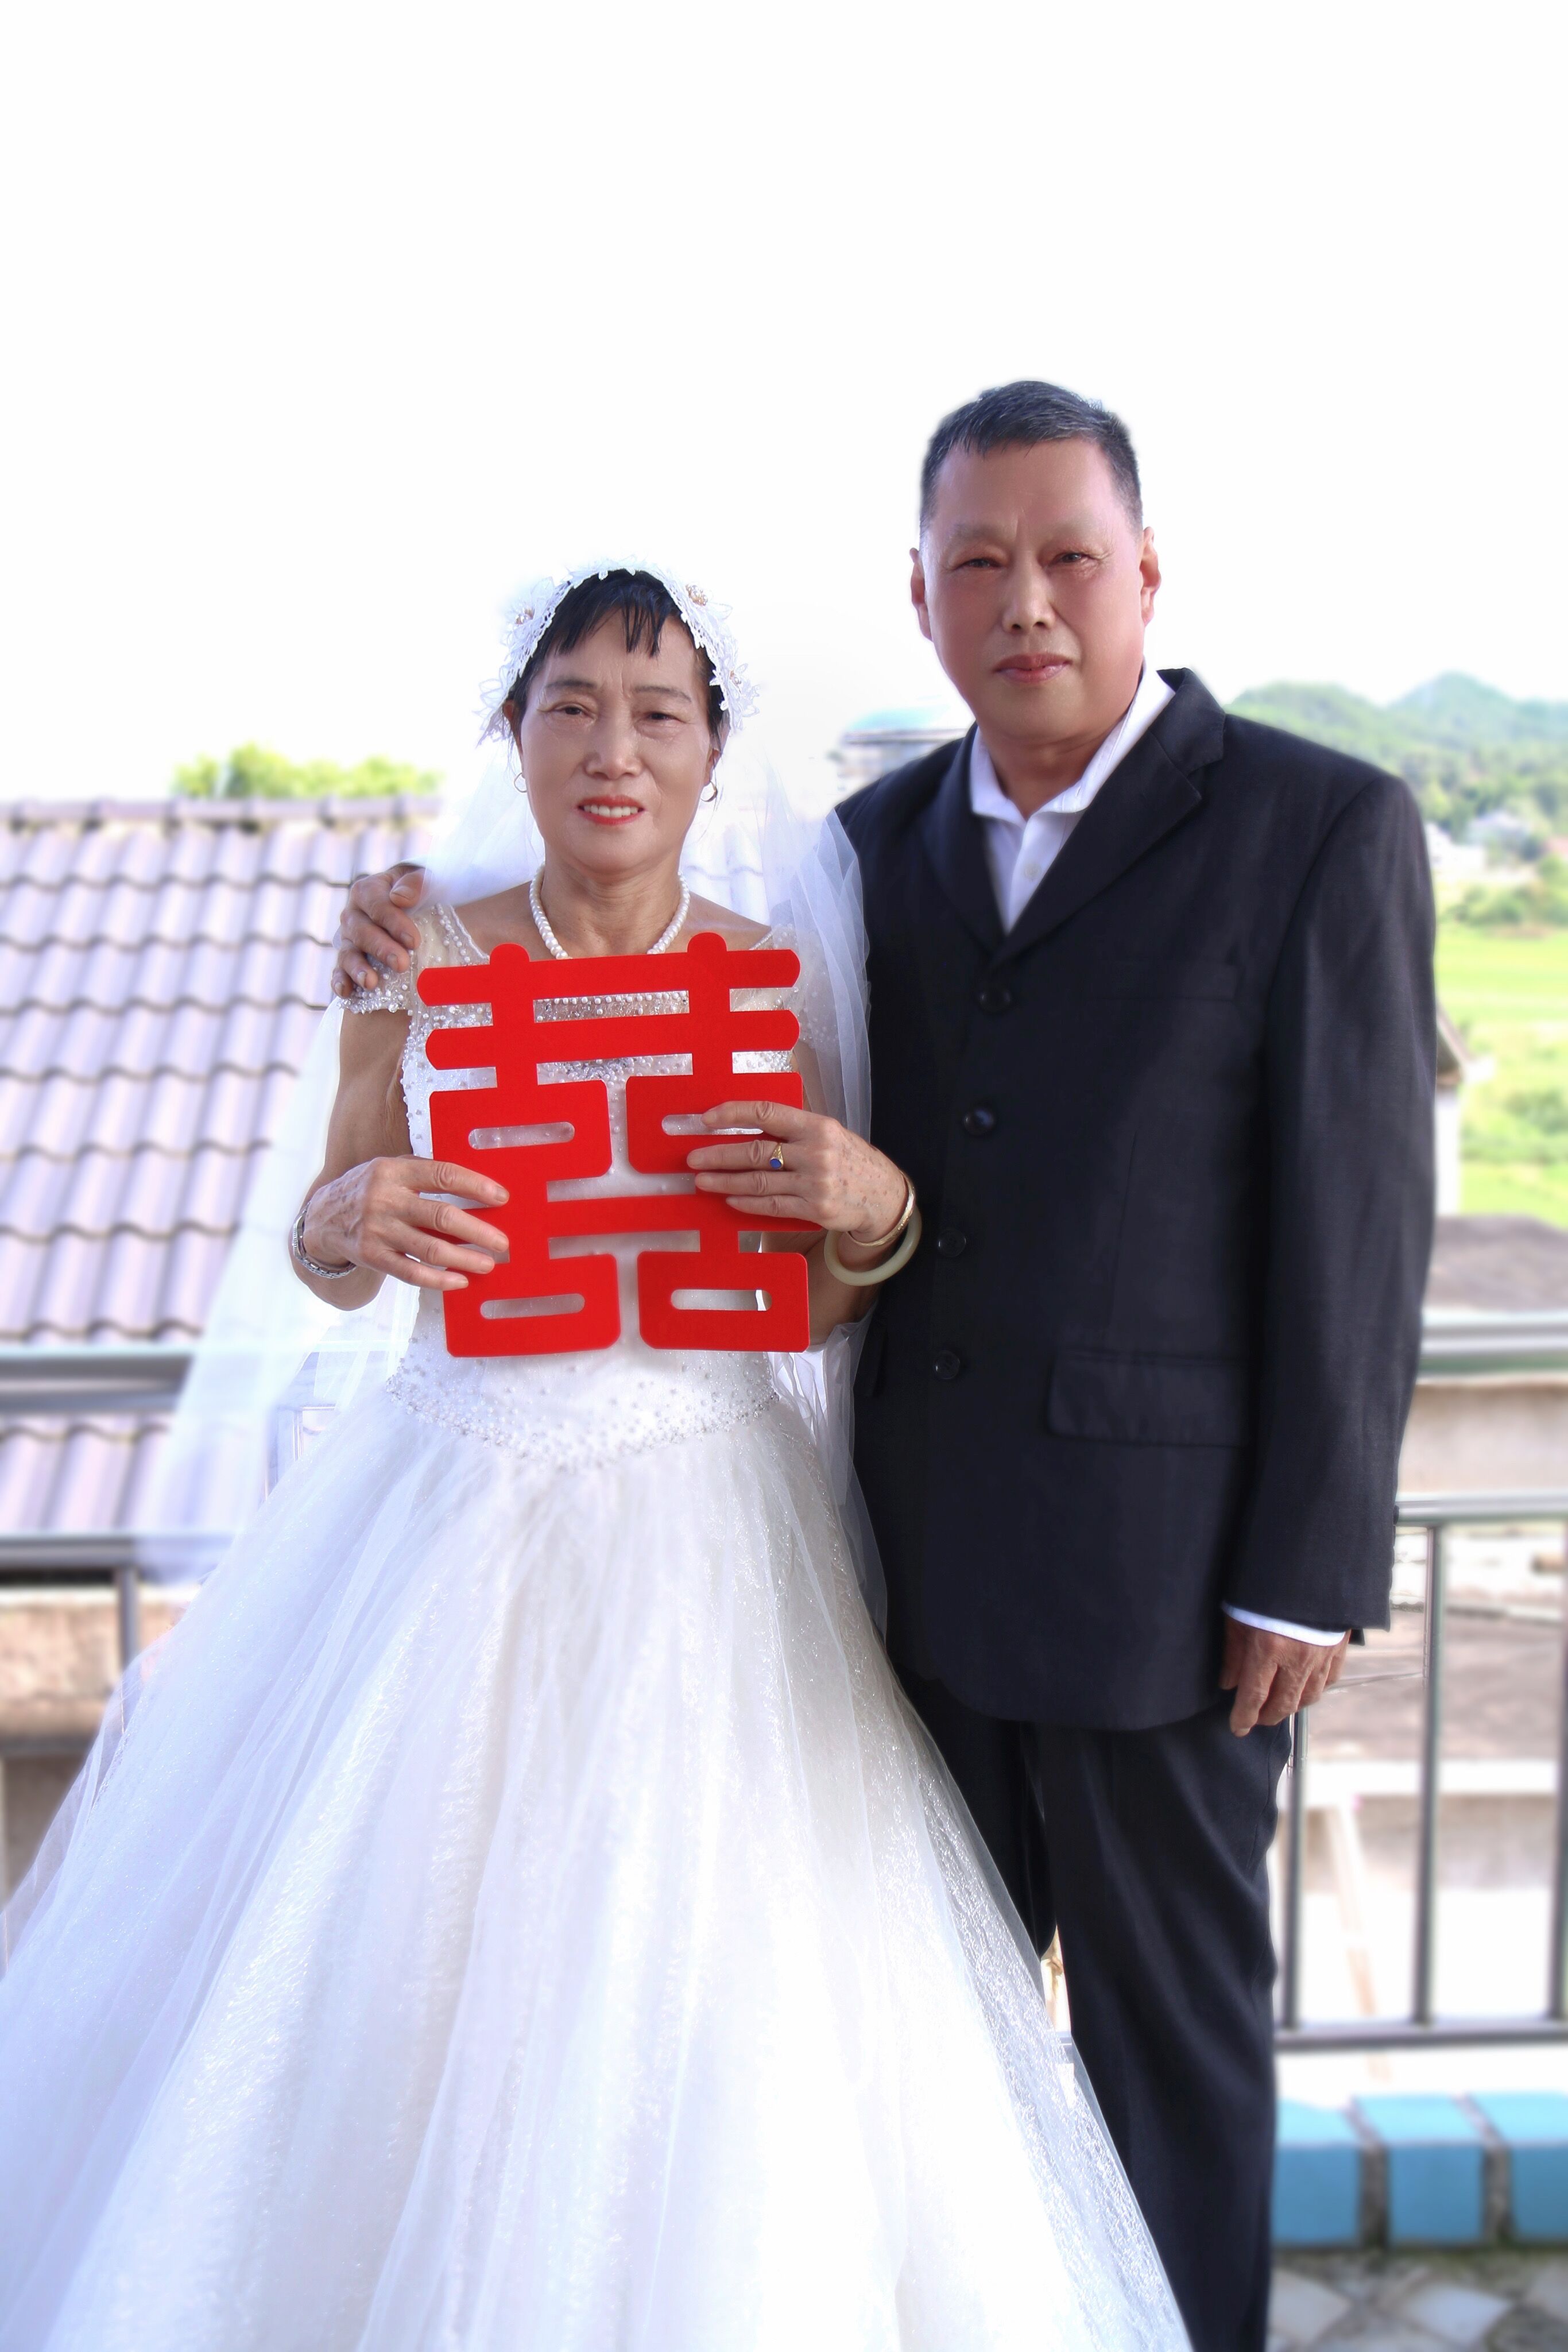 老年人婚纱照 礼服篇 - 父母婚纱照/亲子 - 首尔首尔婚纱摄影